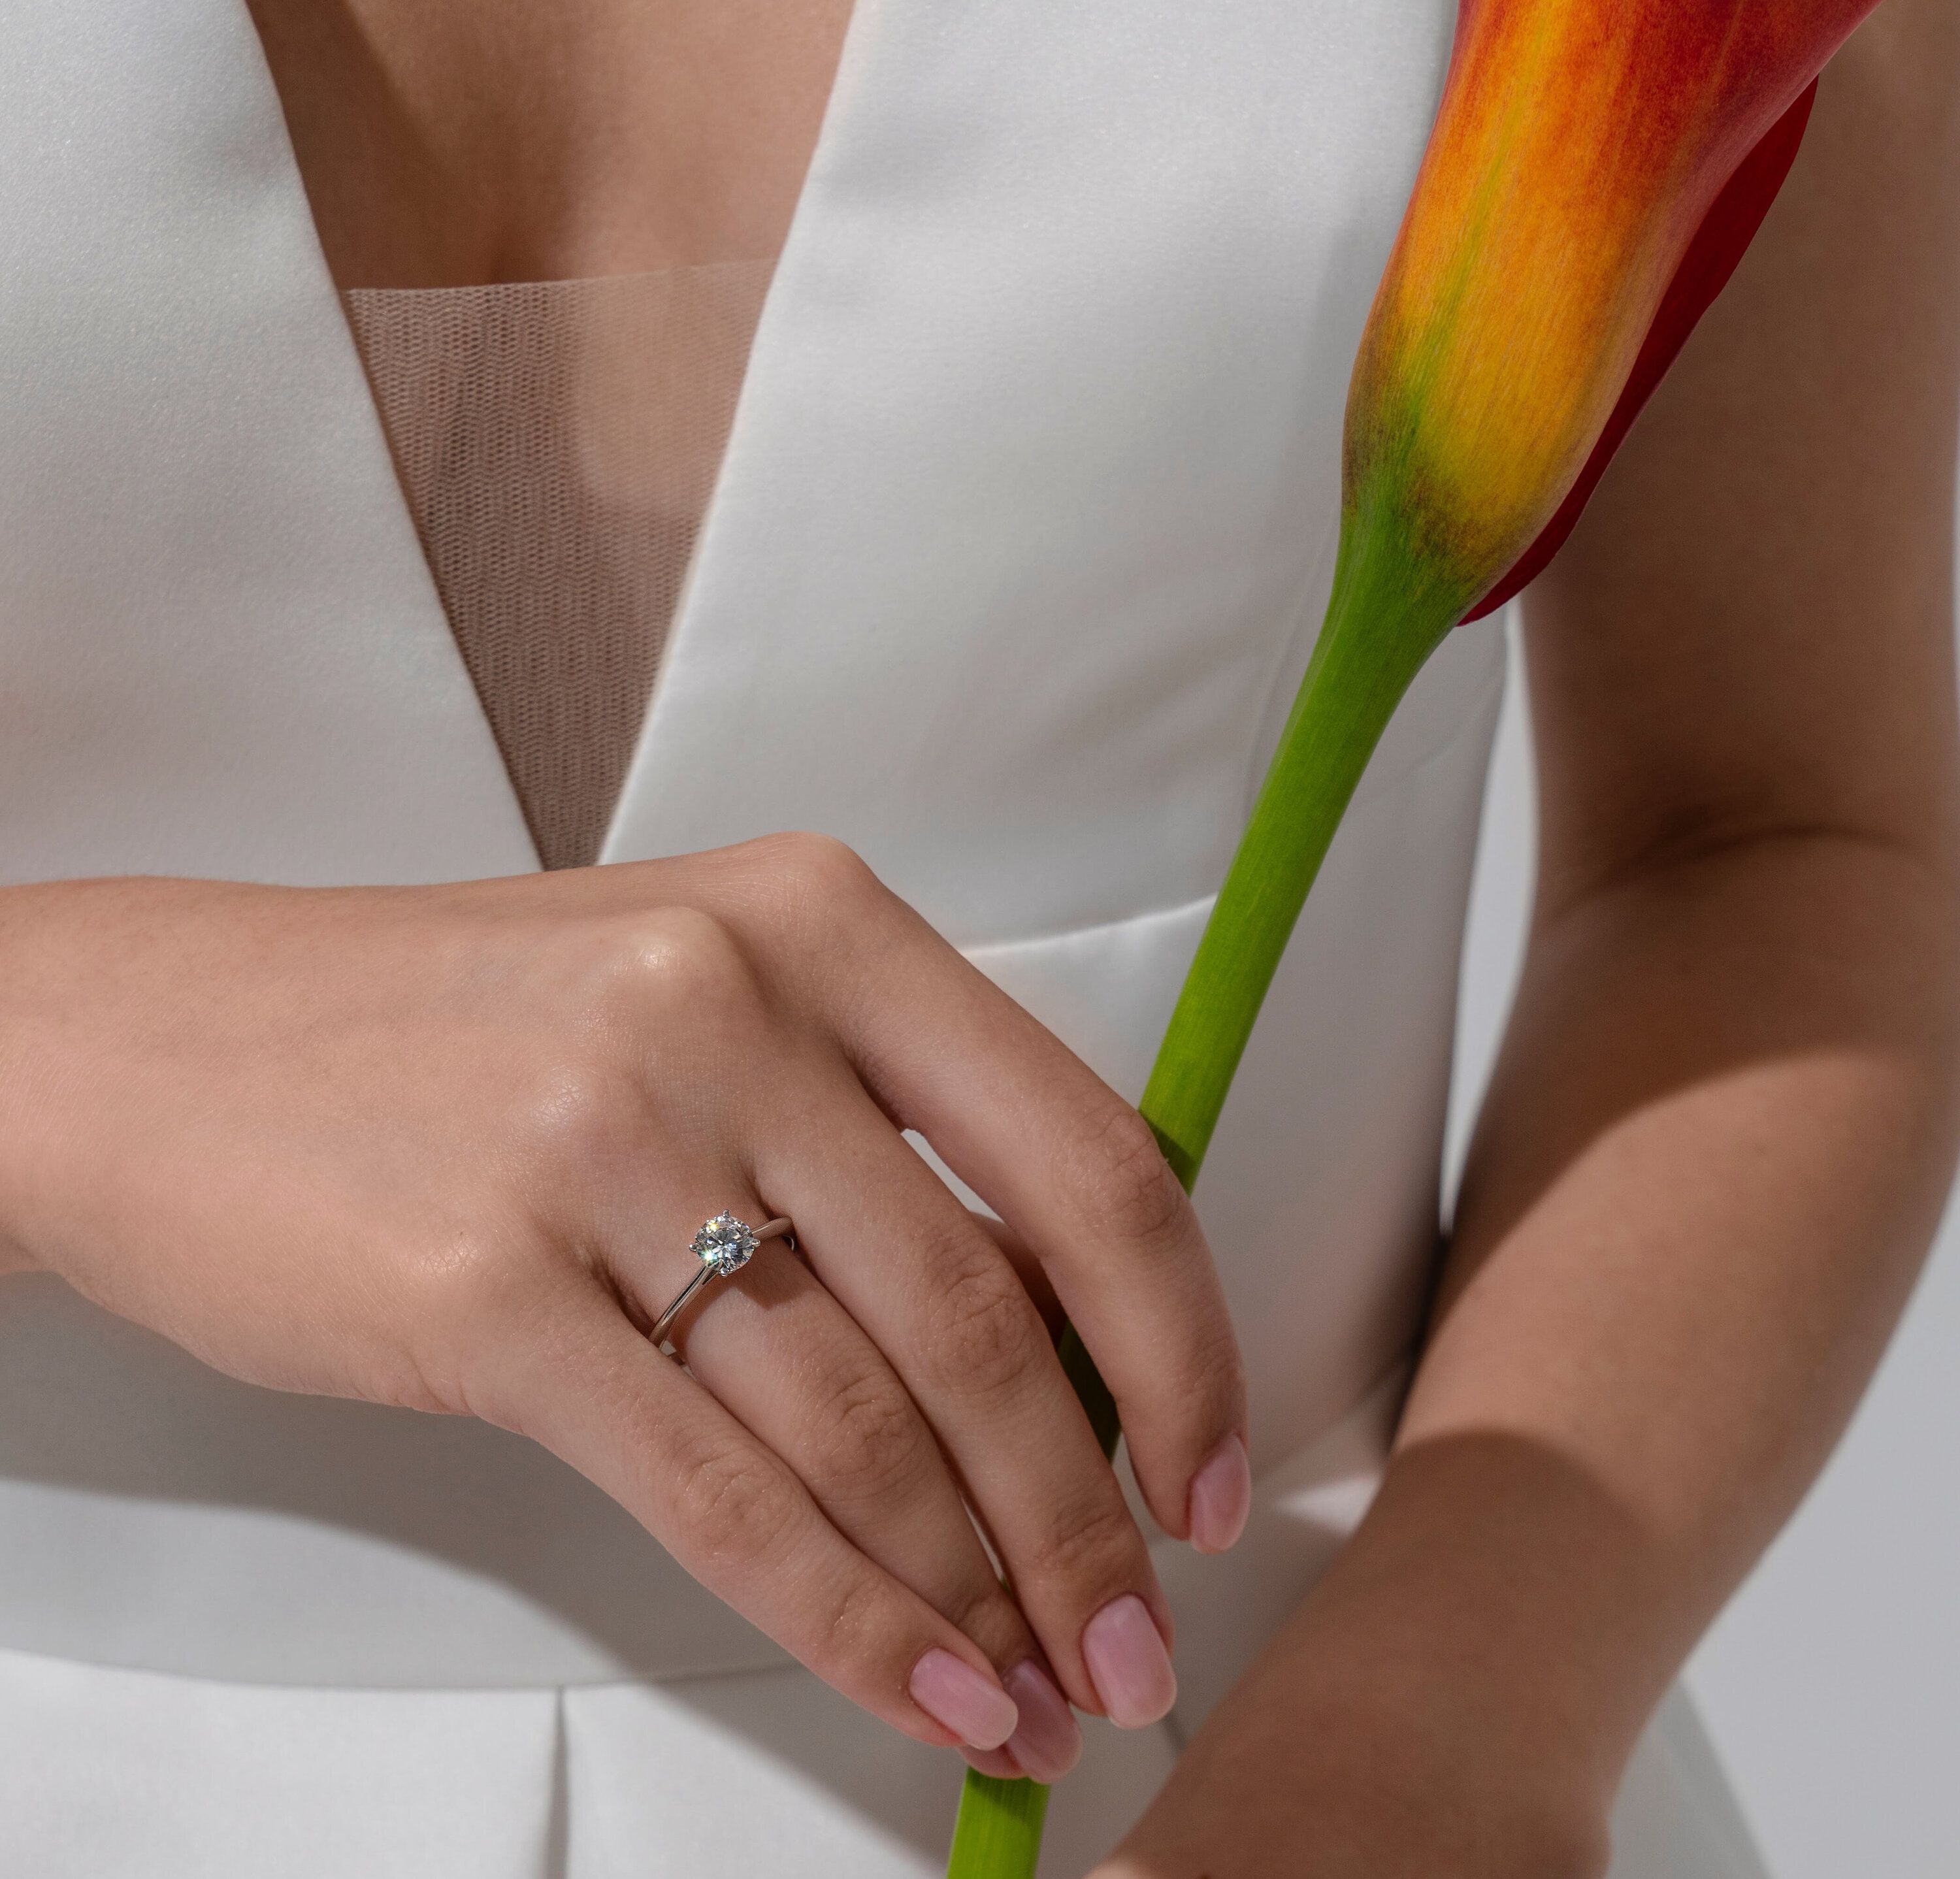 Шоумен Игорь Непутин: «Кольцо для помолвки может стать настоящей семейной историей» 